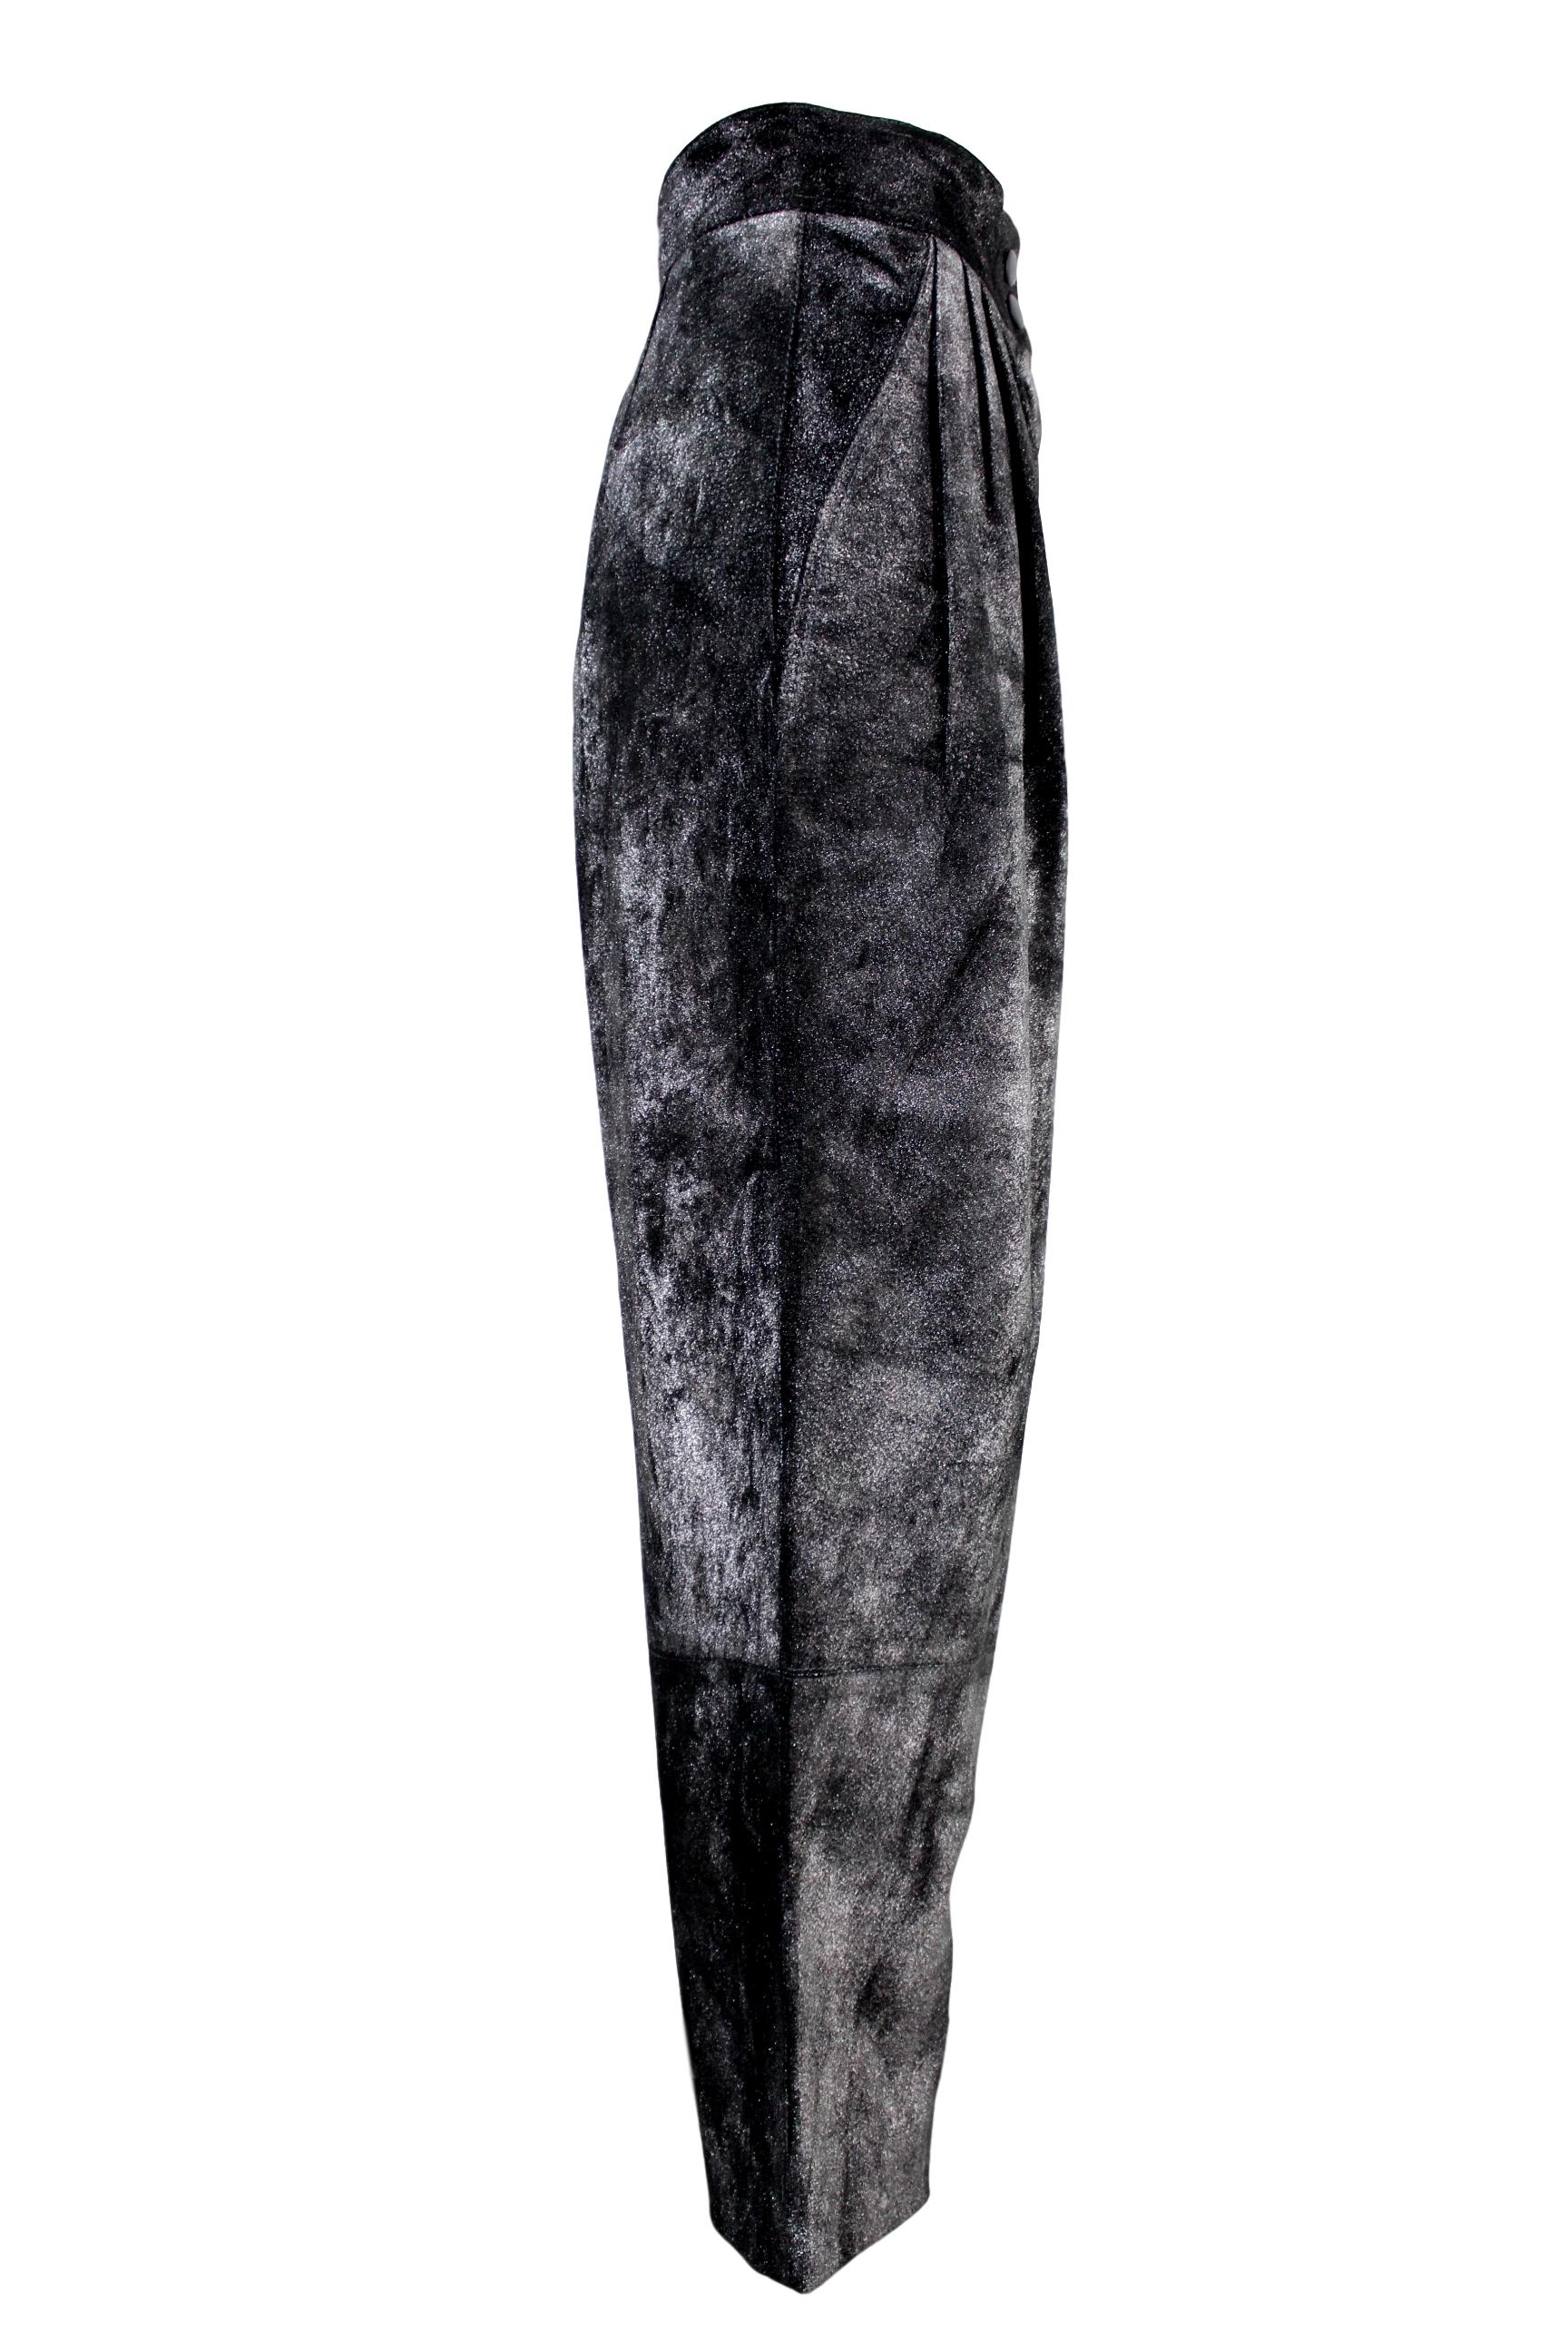 Krizia Pantalon en cuir de porc noir et argenté 1980 Lamè Iridescent Style NWT Neuf - En vente à Brindisi, Bt